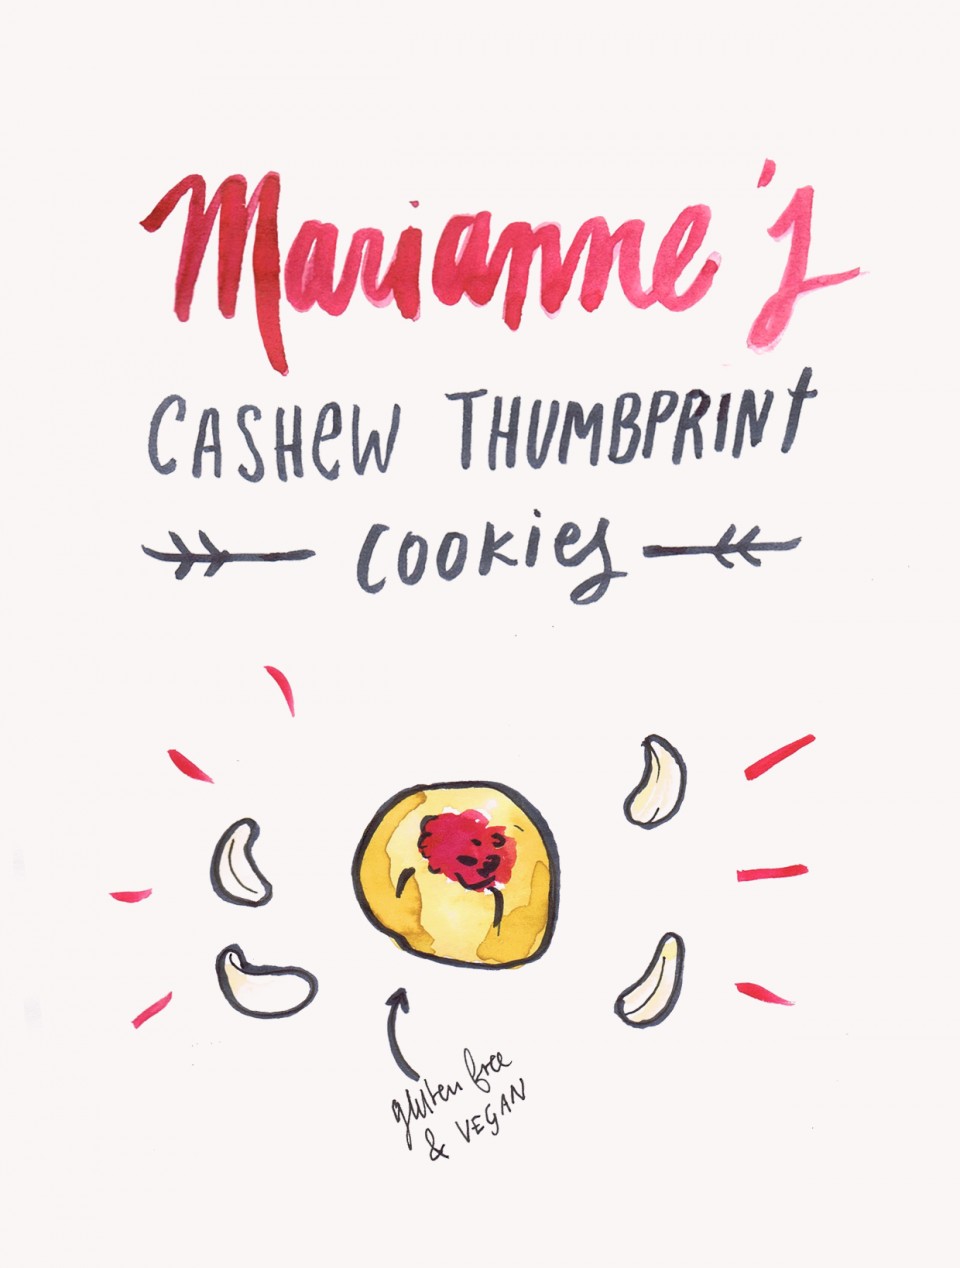 Cashews-marianne